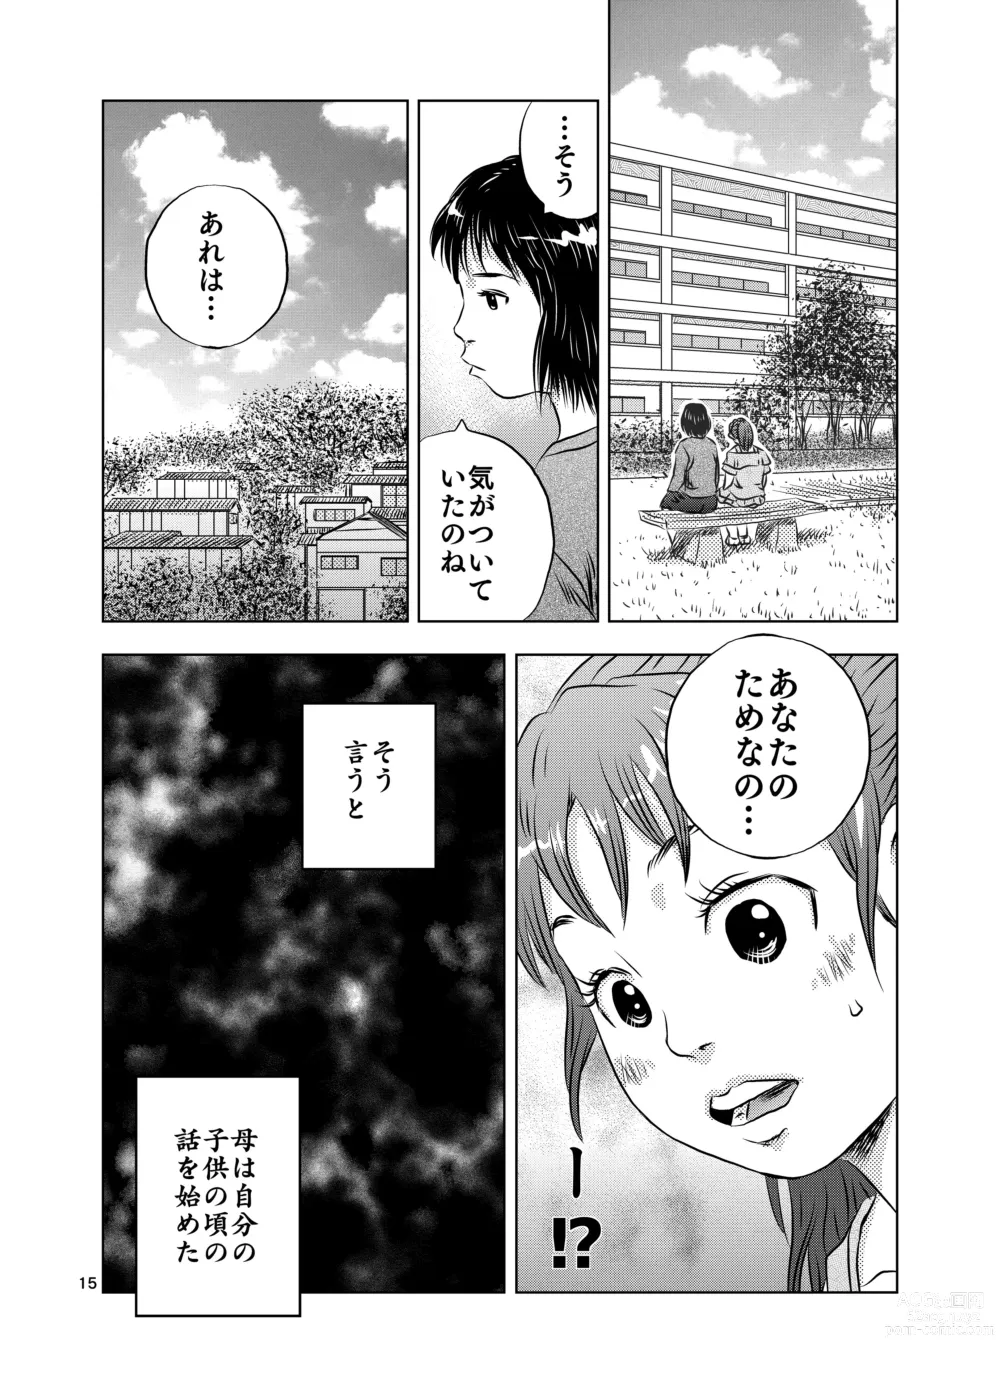 Page 15 of doujinshi Itoko no Aoi-chan